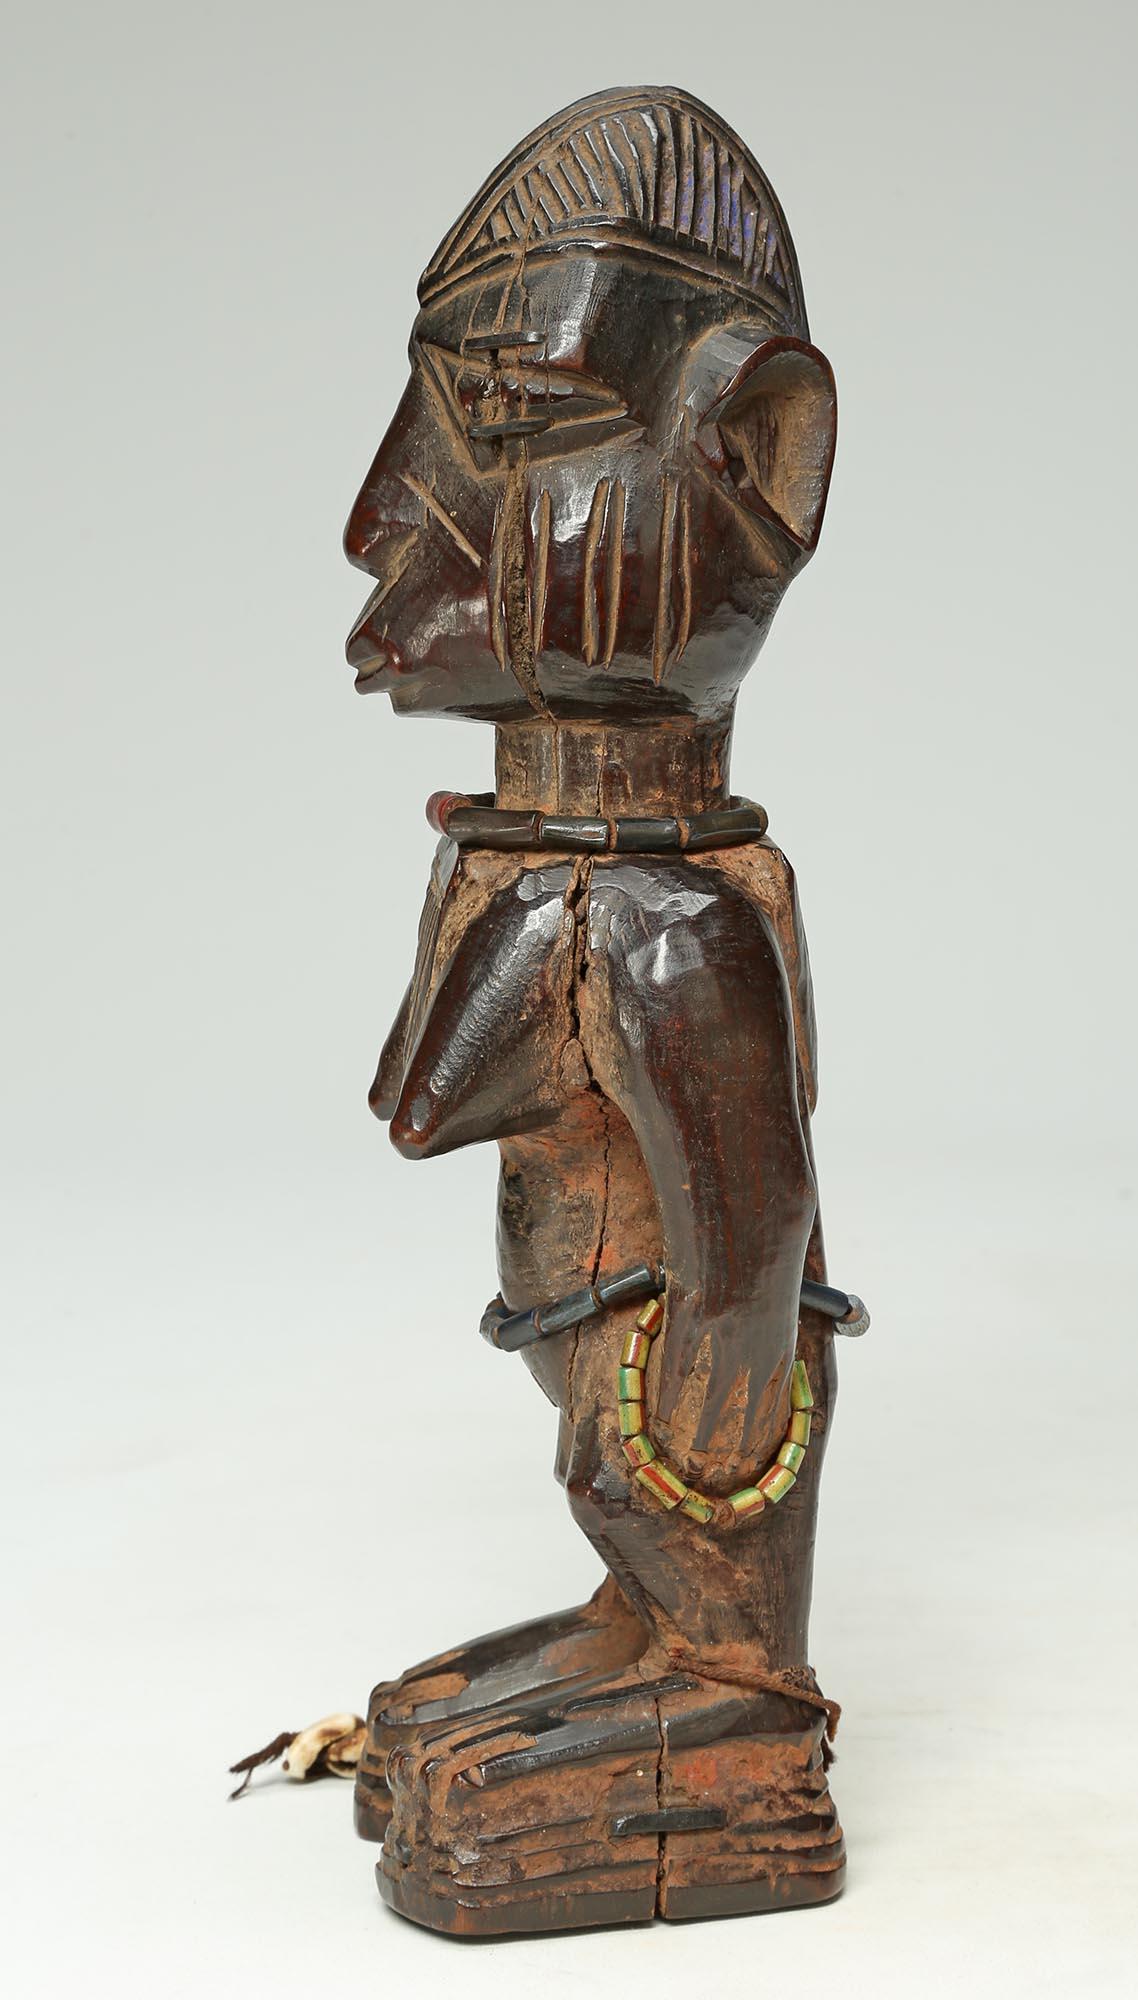 Nigerian Yoruba Female Twin Figure, Ere Ibeji, Nigeria, African Tribal Art with Beads For Sale